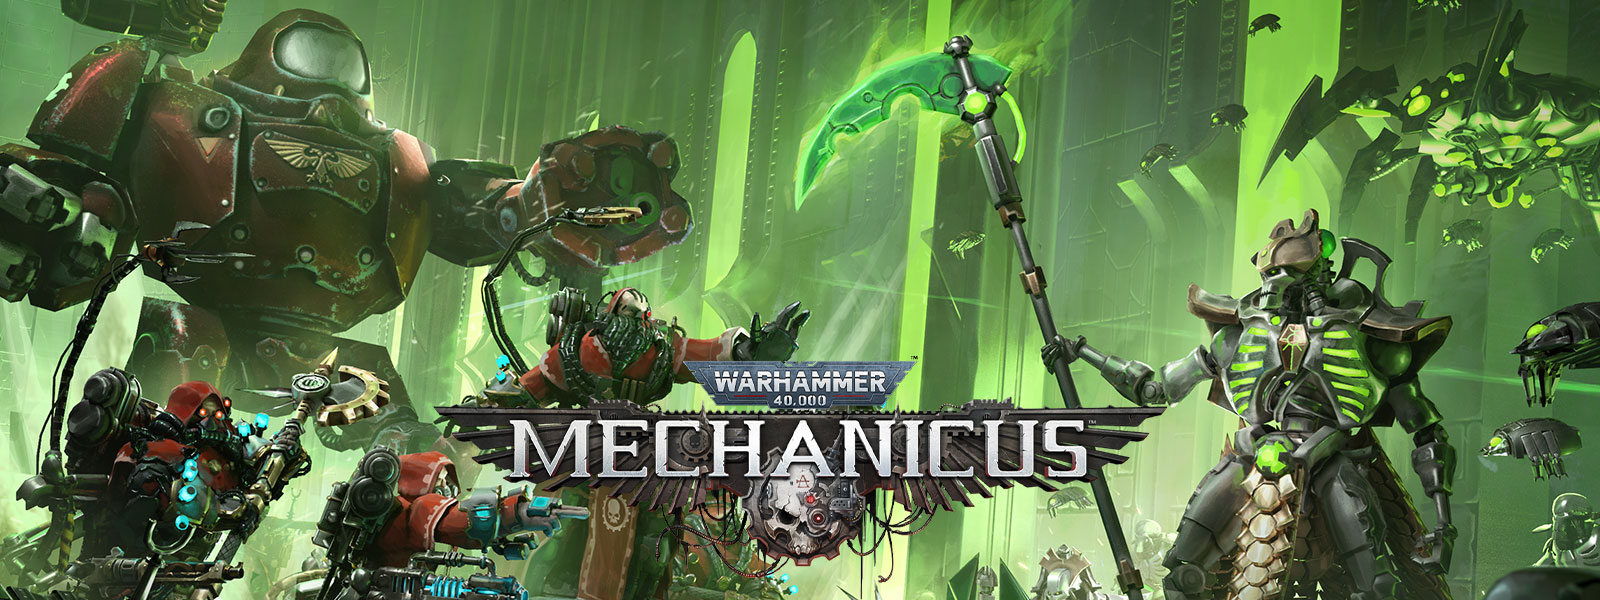 Warhammer 40.000: Mechanicus, eserciti altamente tecnologici pronti per la battaglia.